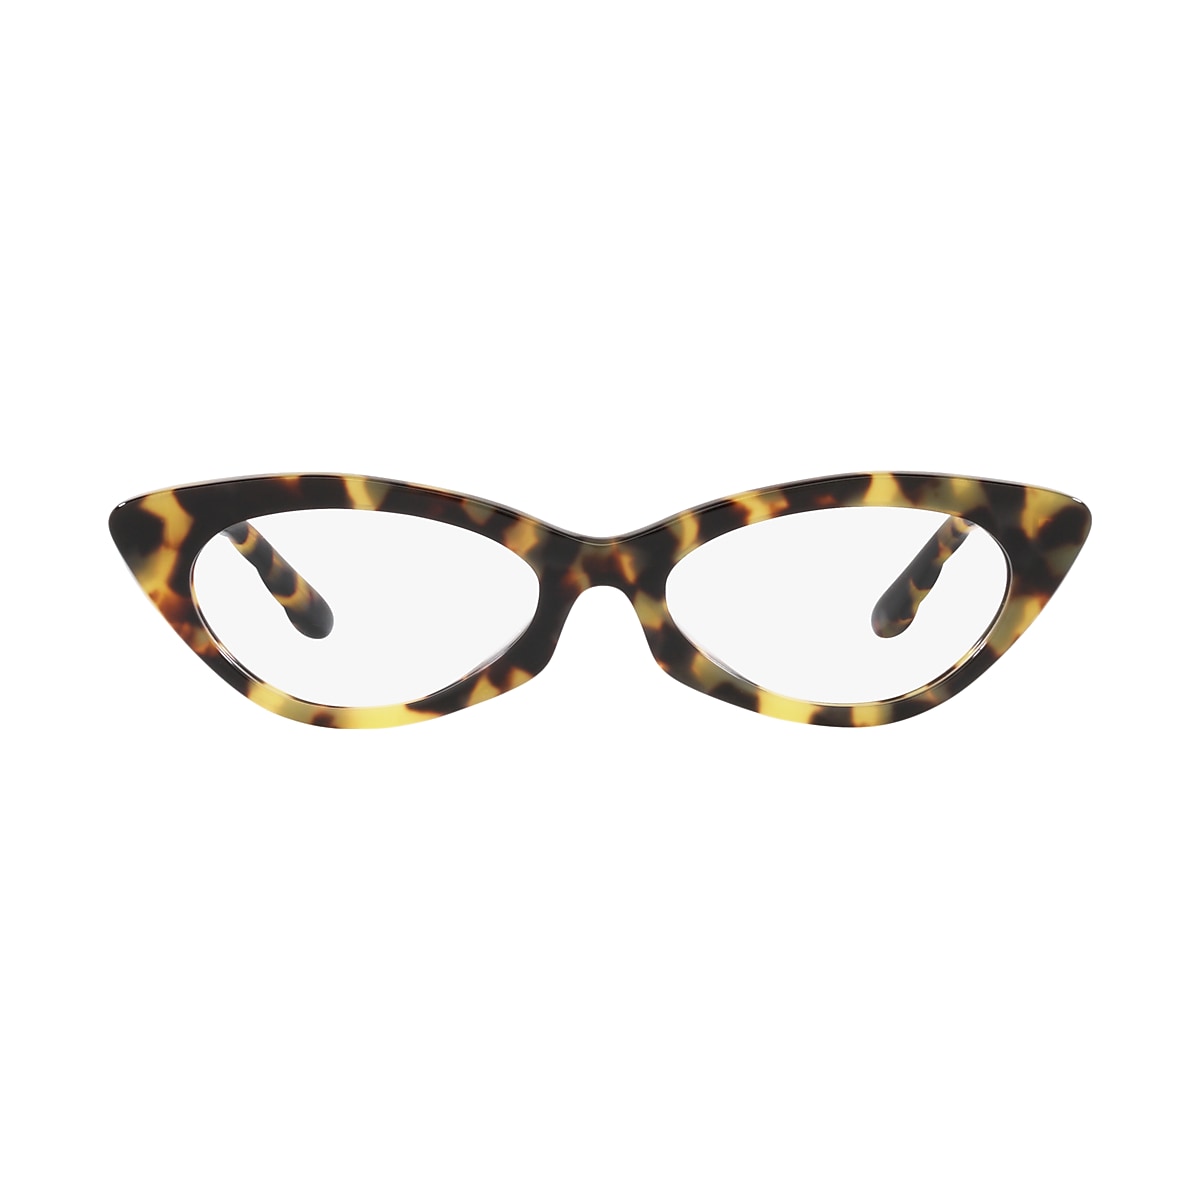 Tory Burch Tokyo Tortoise Eyeglasses | Glasses.com® | Free Shipping